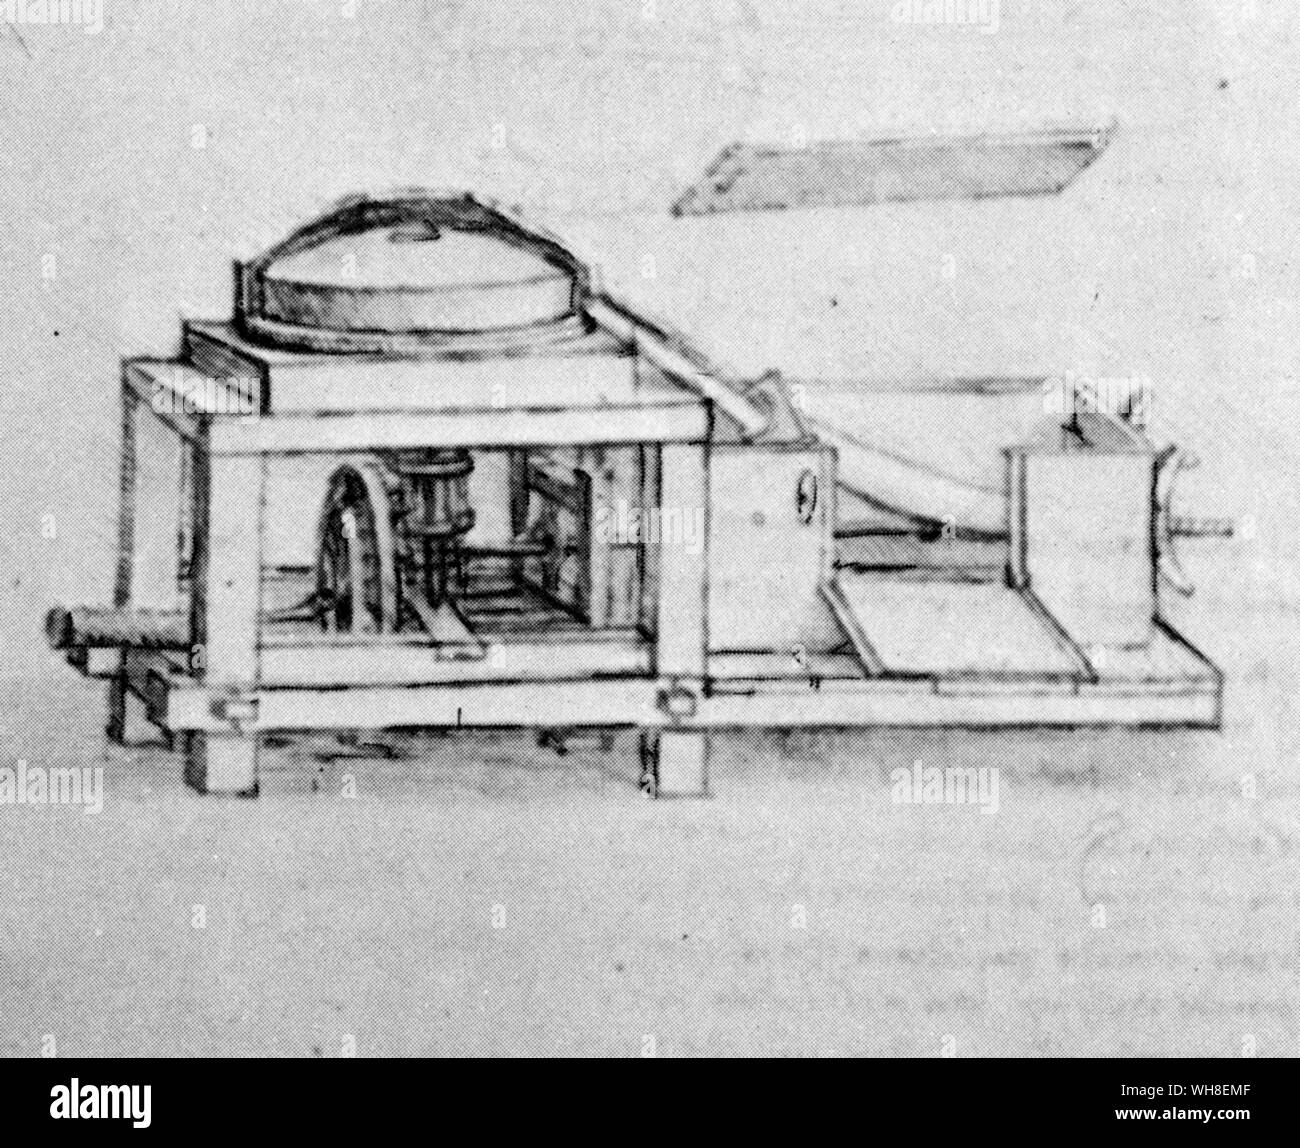 Leonardo's Mühle hat eine mechanische bolter oder zylindrische Sieb. Leonardos Zeichnung ist der erste seiner Art. Leonardo da Vinci (1452-1519) war ein italienischer Renaissance Architekt, Musiker, Anatom, Erfinder, Ingenieur, Bildhauer, Geometer und Künstler. . . Stockfoto